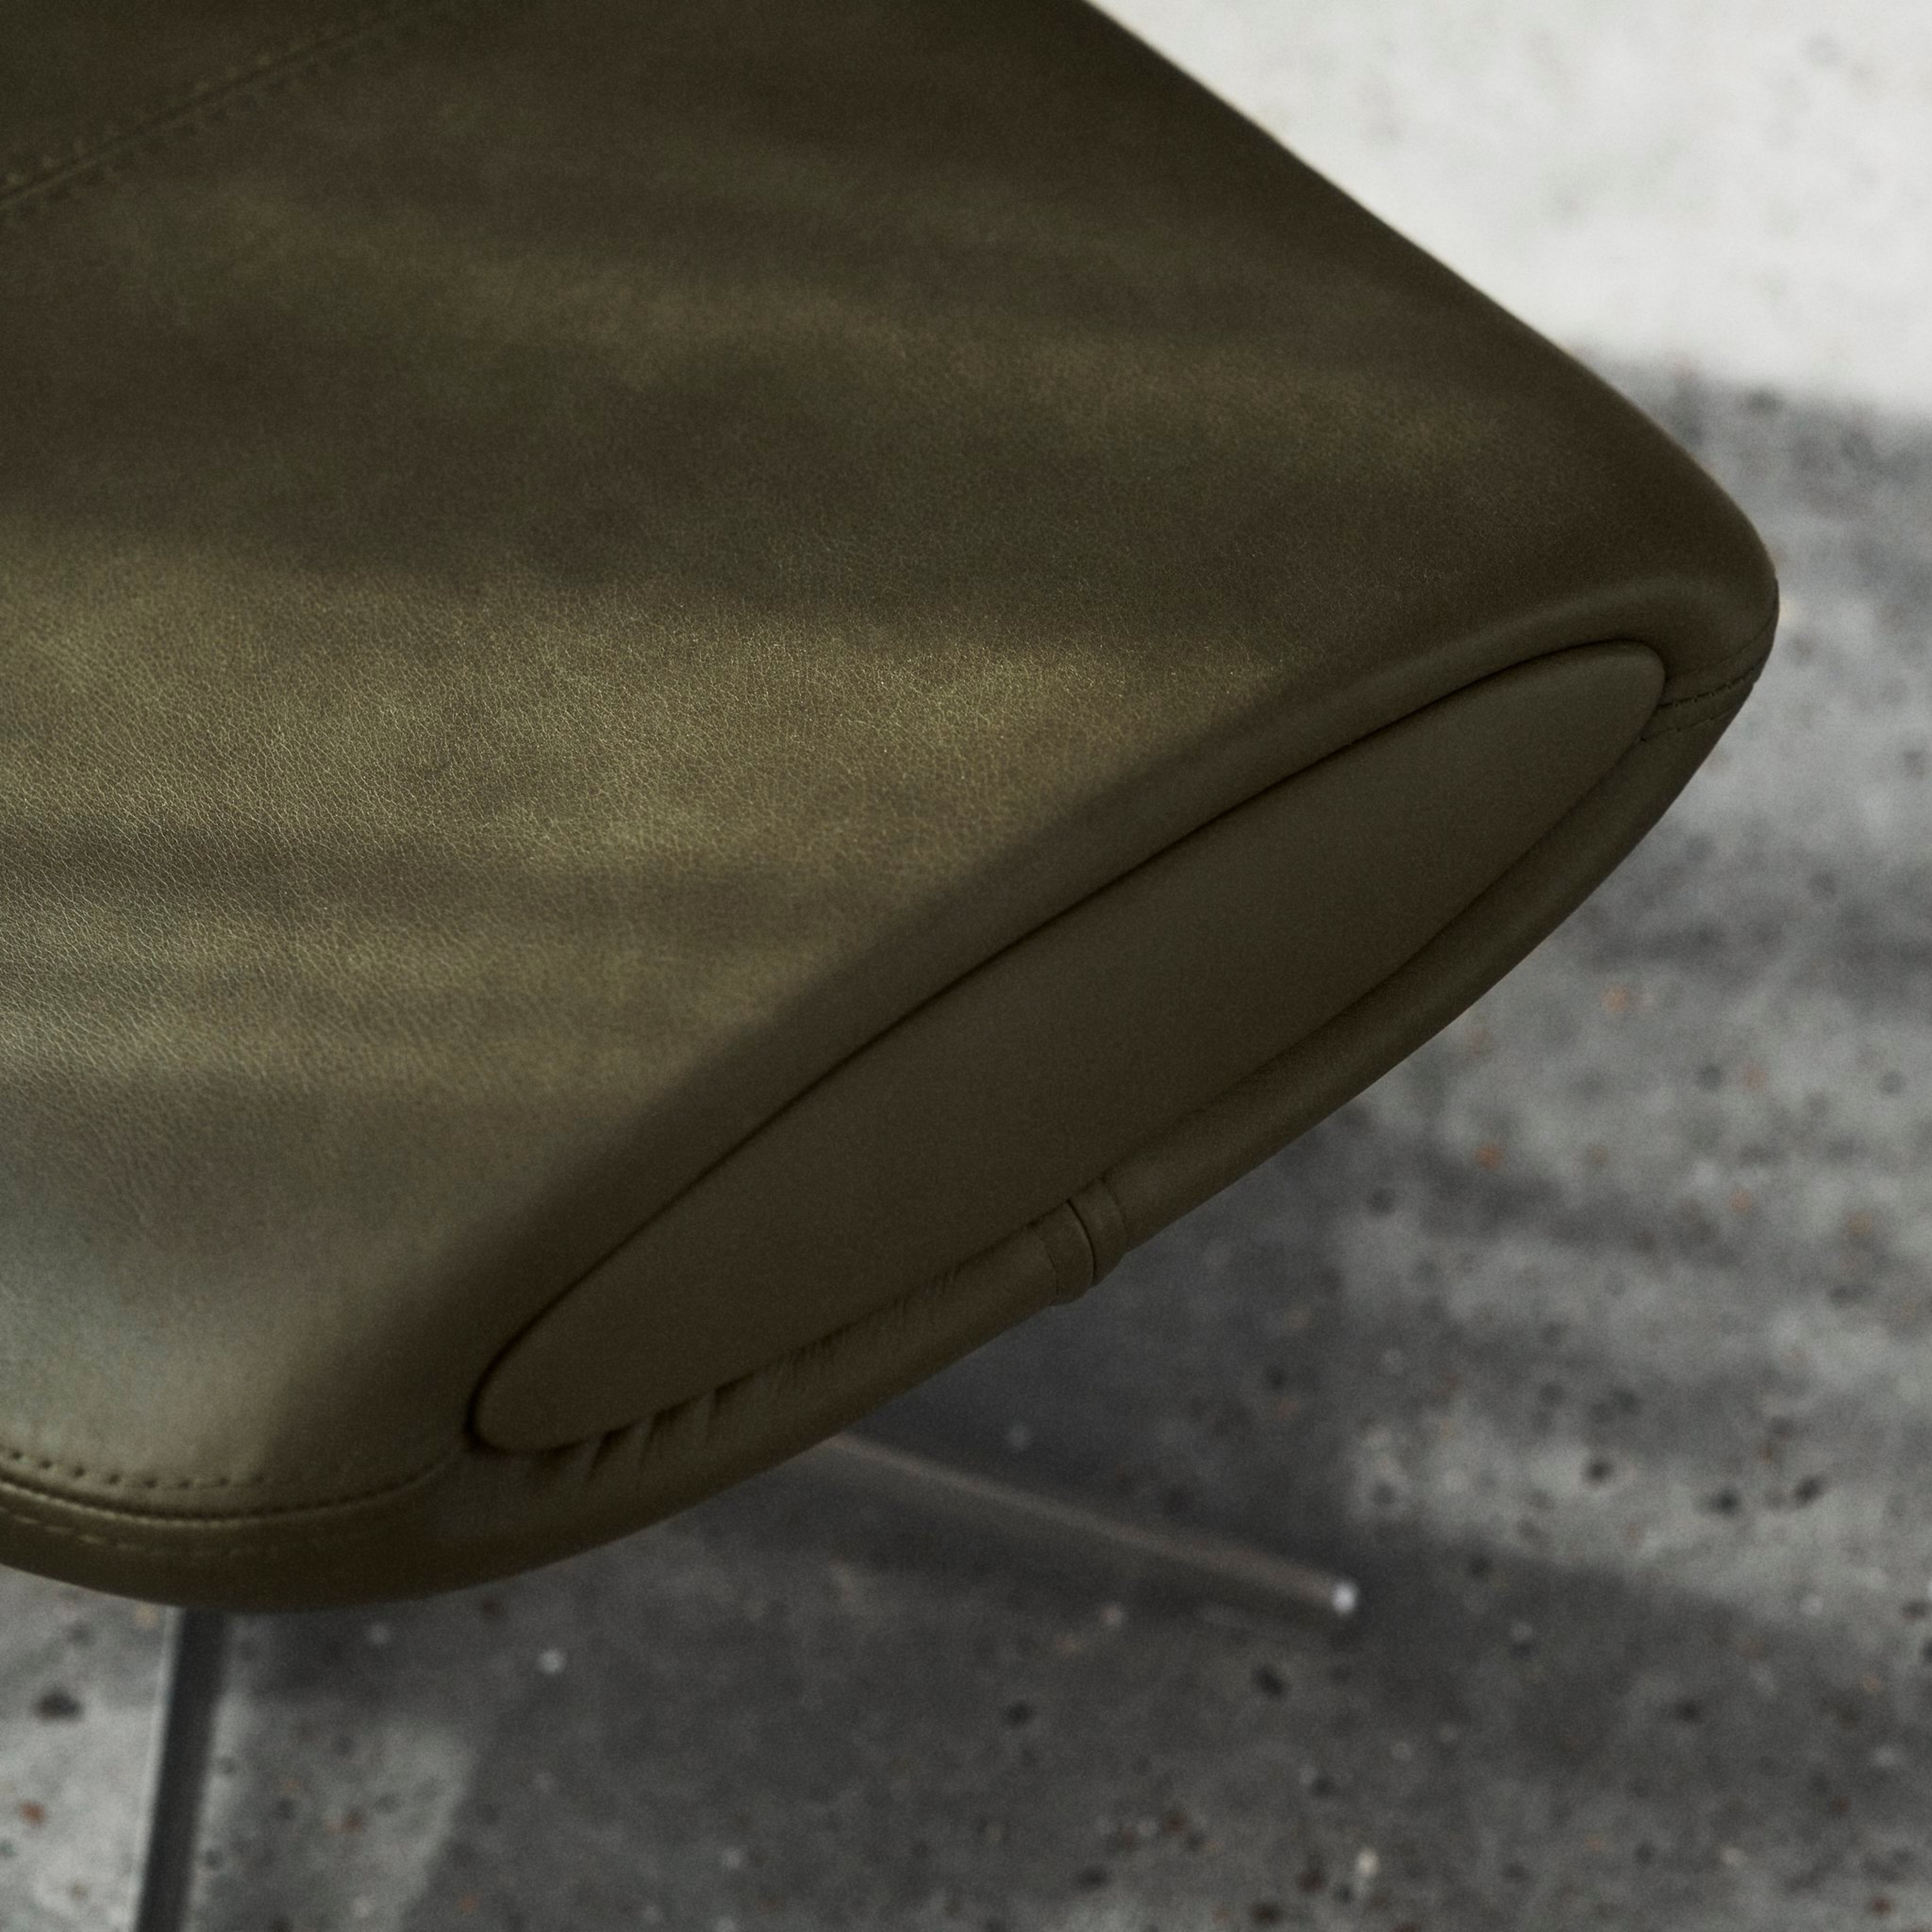 Detailný pohľad na olivovo zelenú hranu stoličky s prešívanými detailmi na betónovej podlahe.